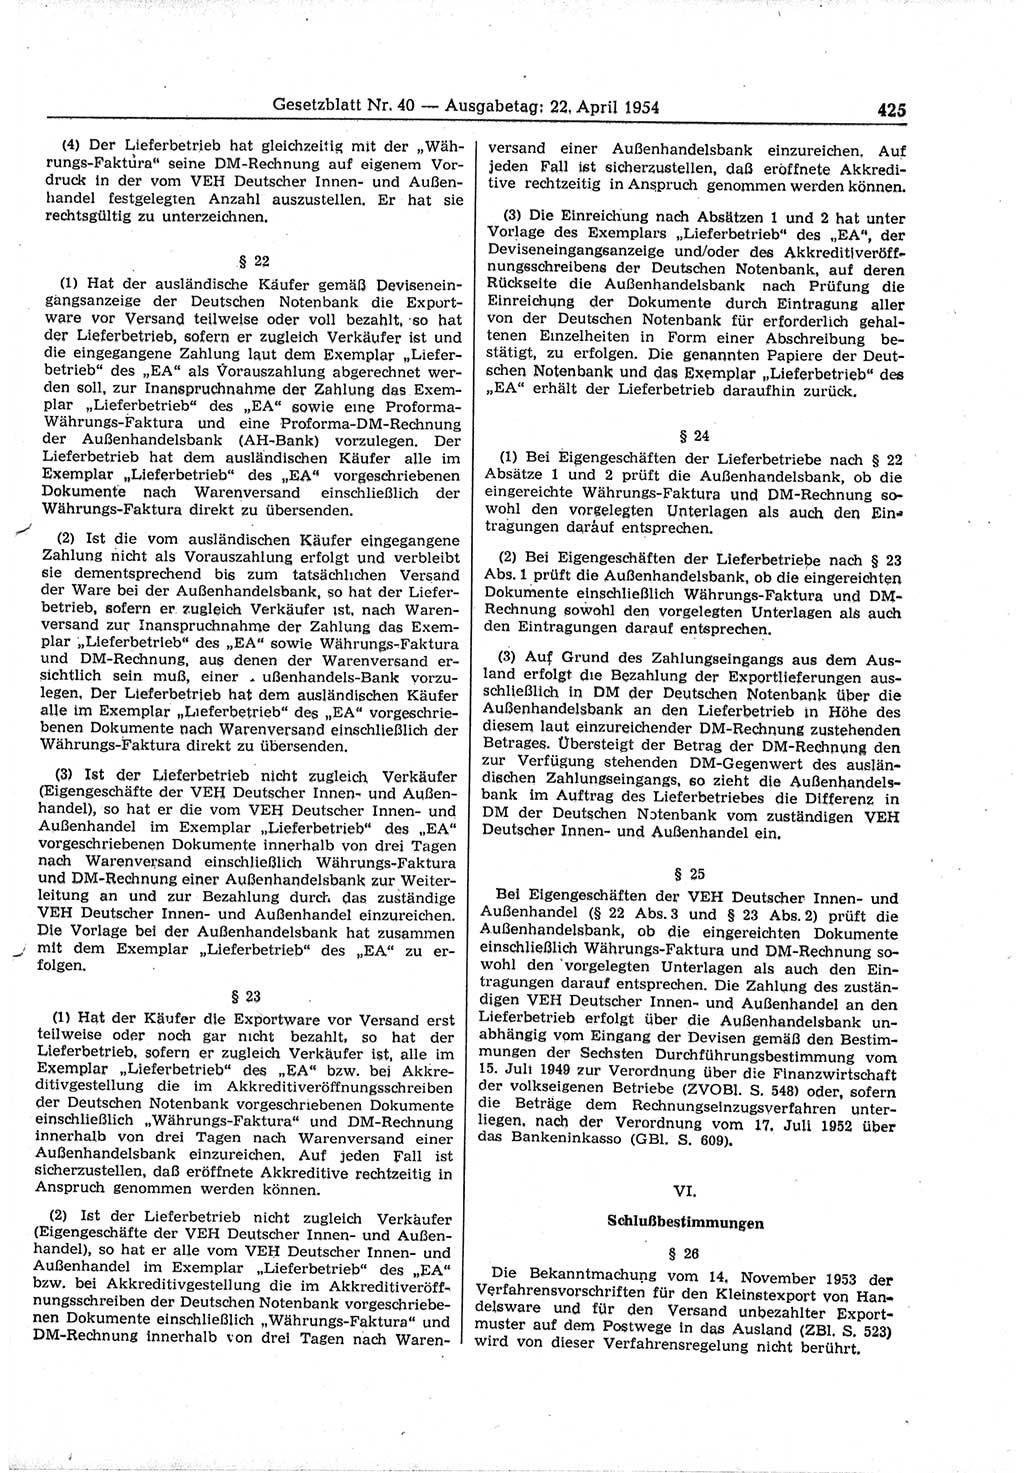 Gesetzblatt (GBl.) der Deutschen Demokratischen Republik (DDR) 1954, Seite 425 (GBl. DDR 1954, S. 425)